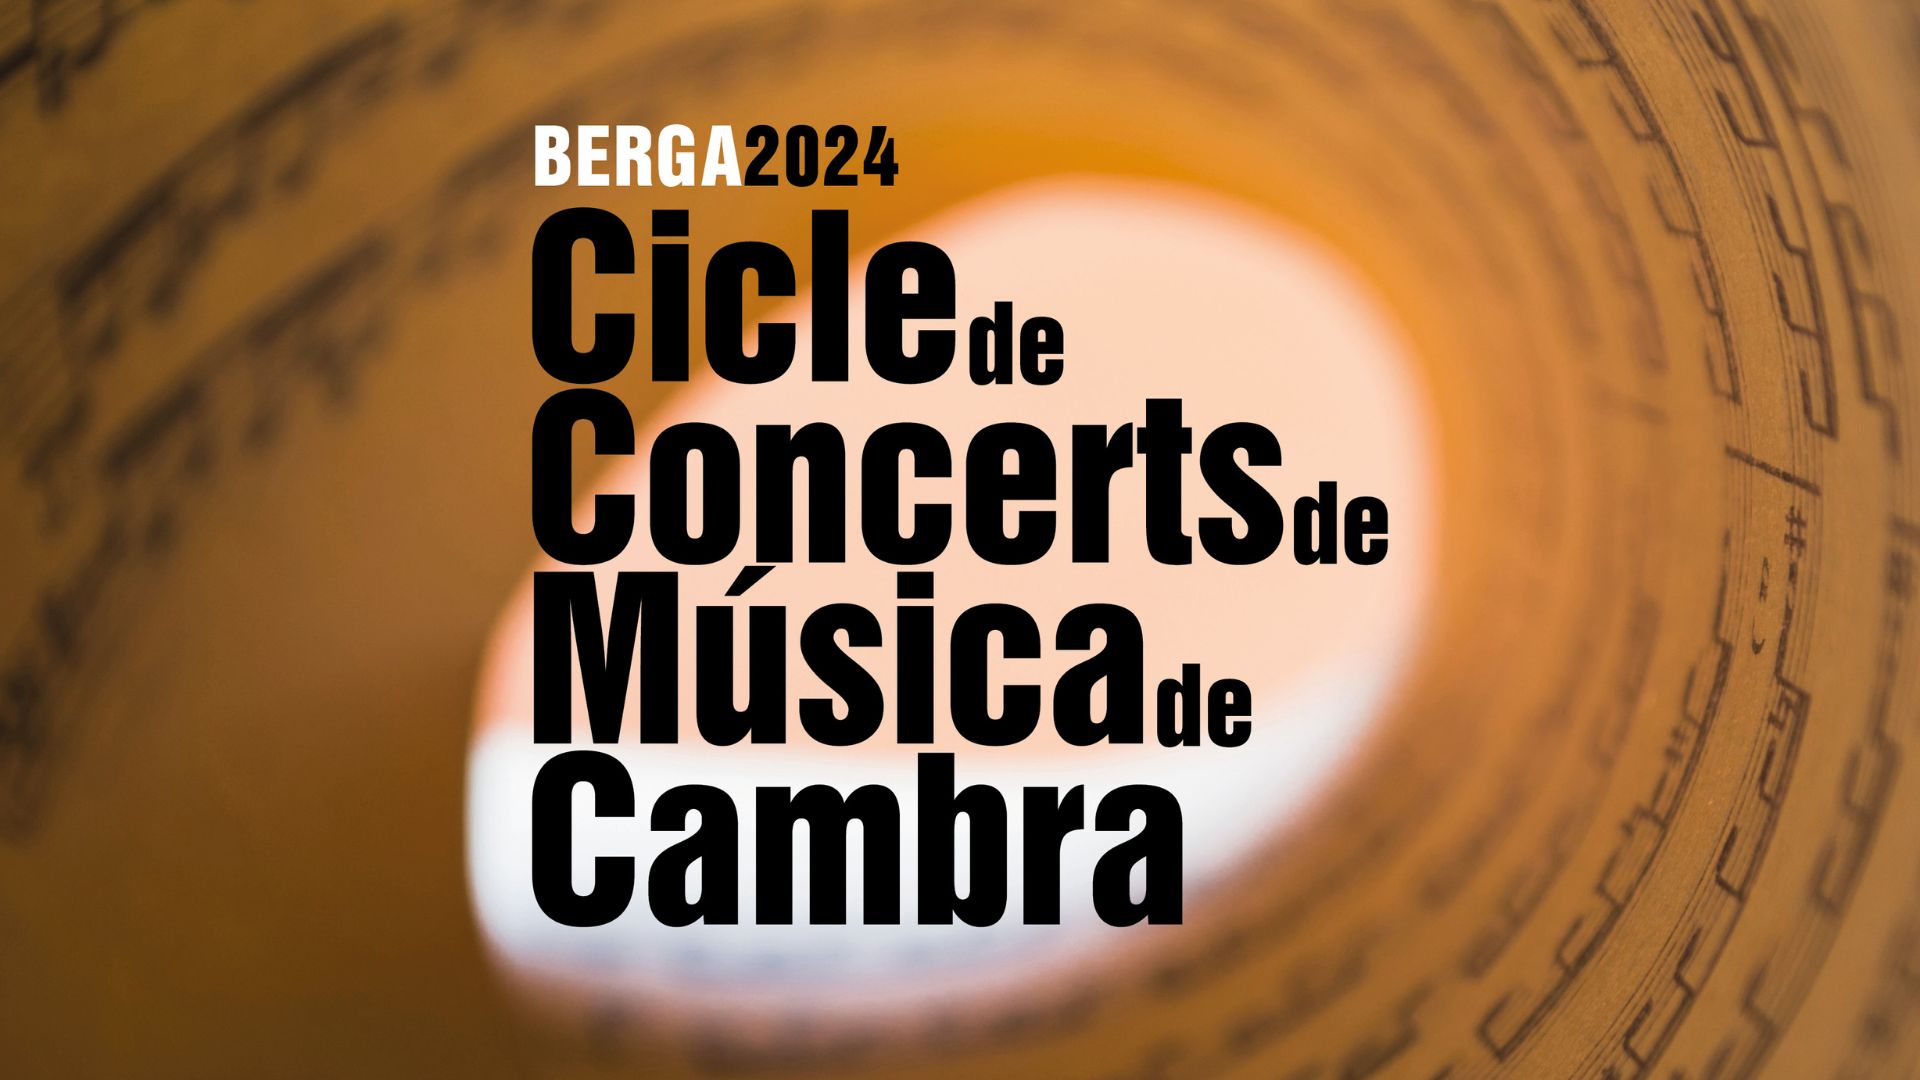 Berga impulsa un cicle de música de cambra amb tres actuacions al Pavelló de Suècia i al Convent de Sant Francesc